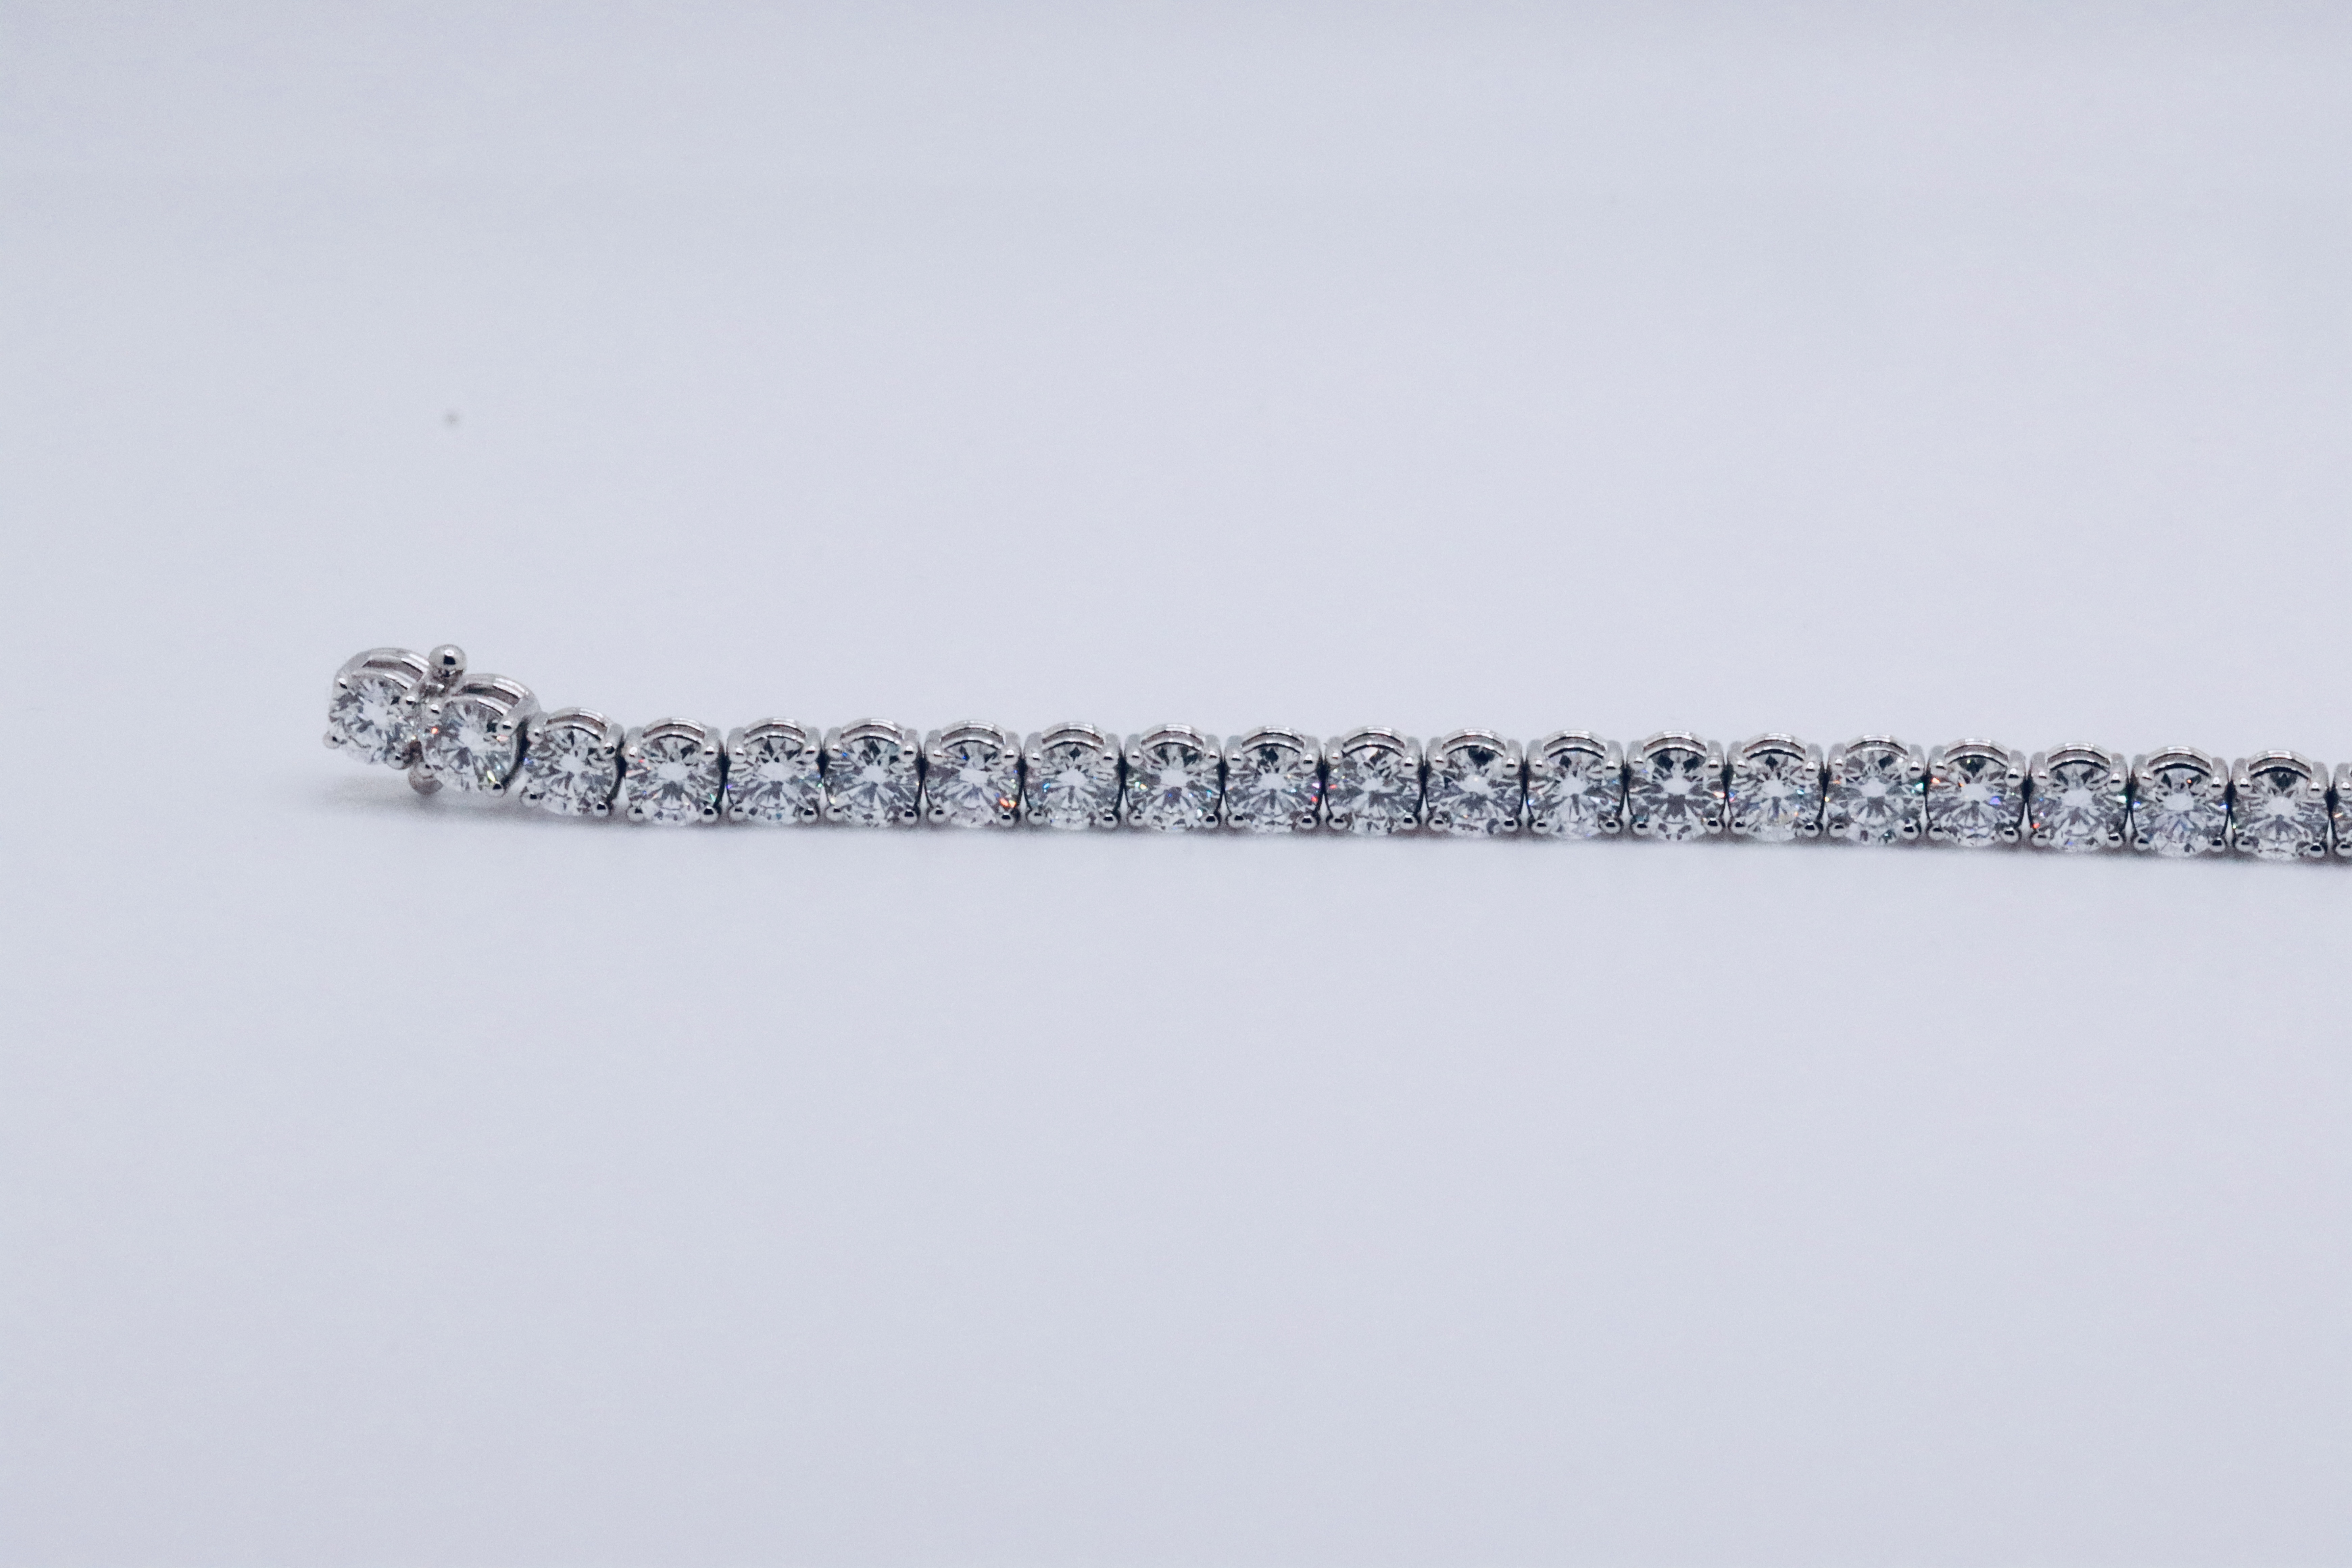 Round Brilliant Cut 14 Carat Diamond Tennis Bracelet D Colour VVS Clarity - 18Kt White Gold - IGI - Image 16 of 37